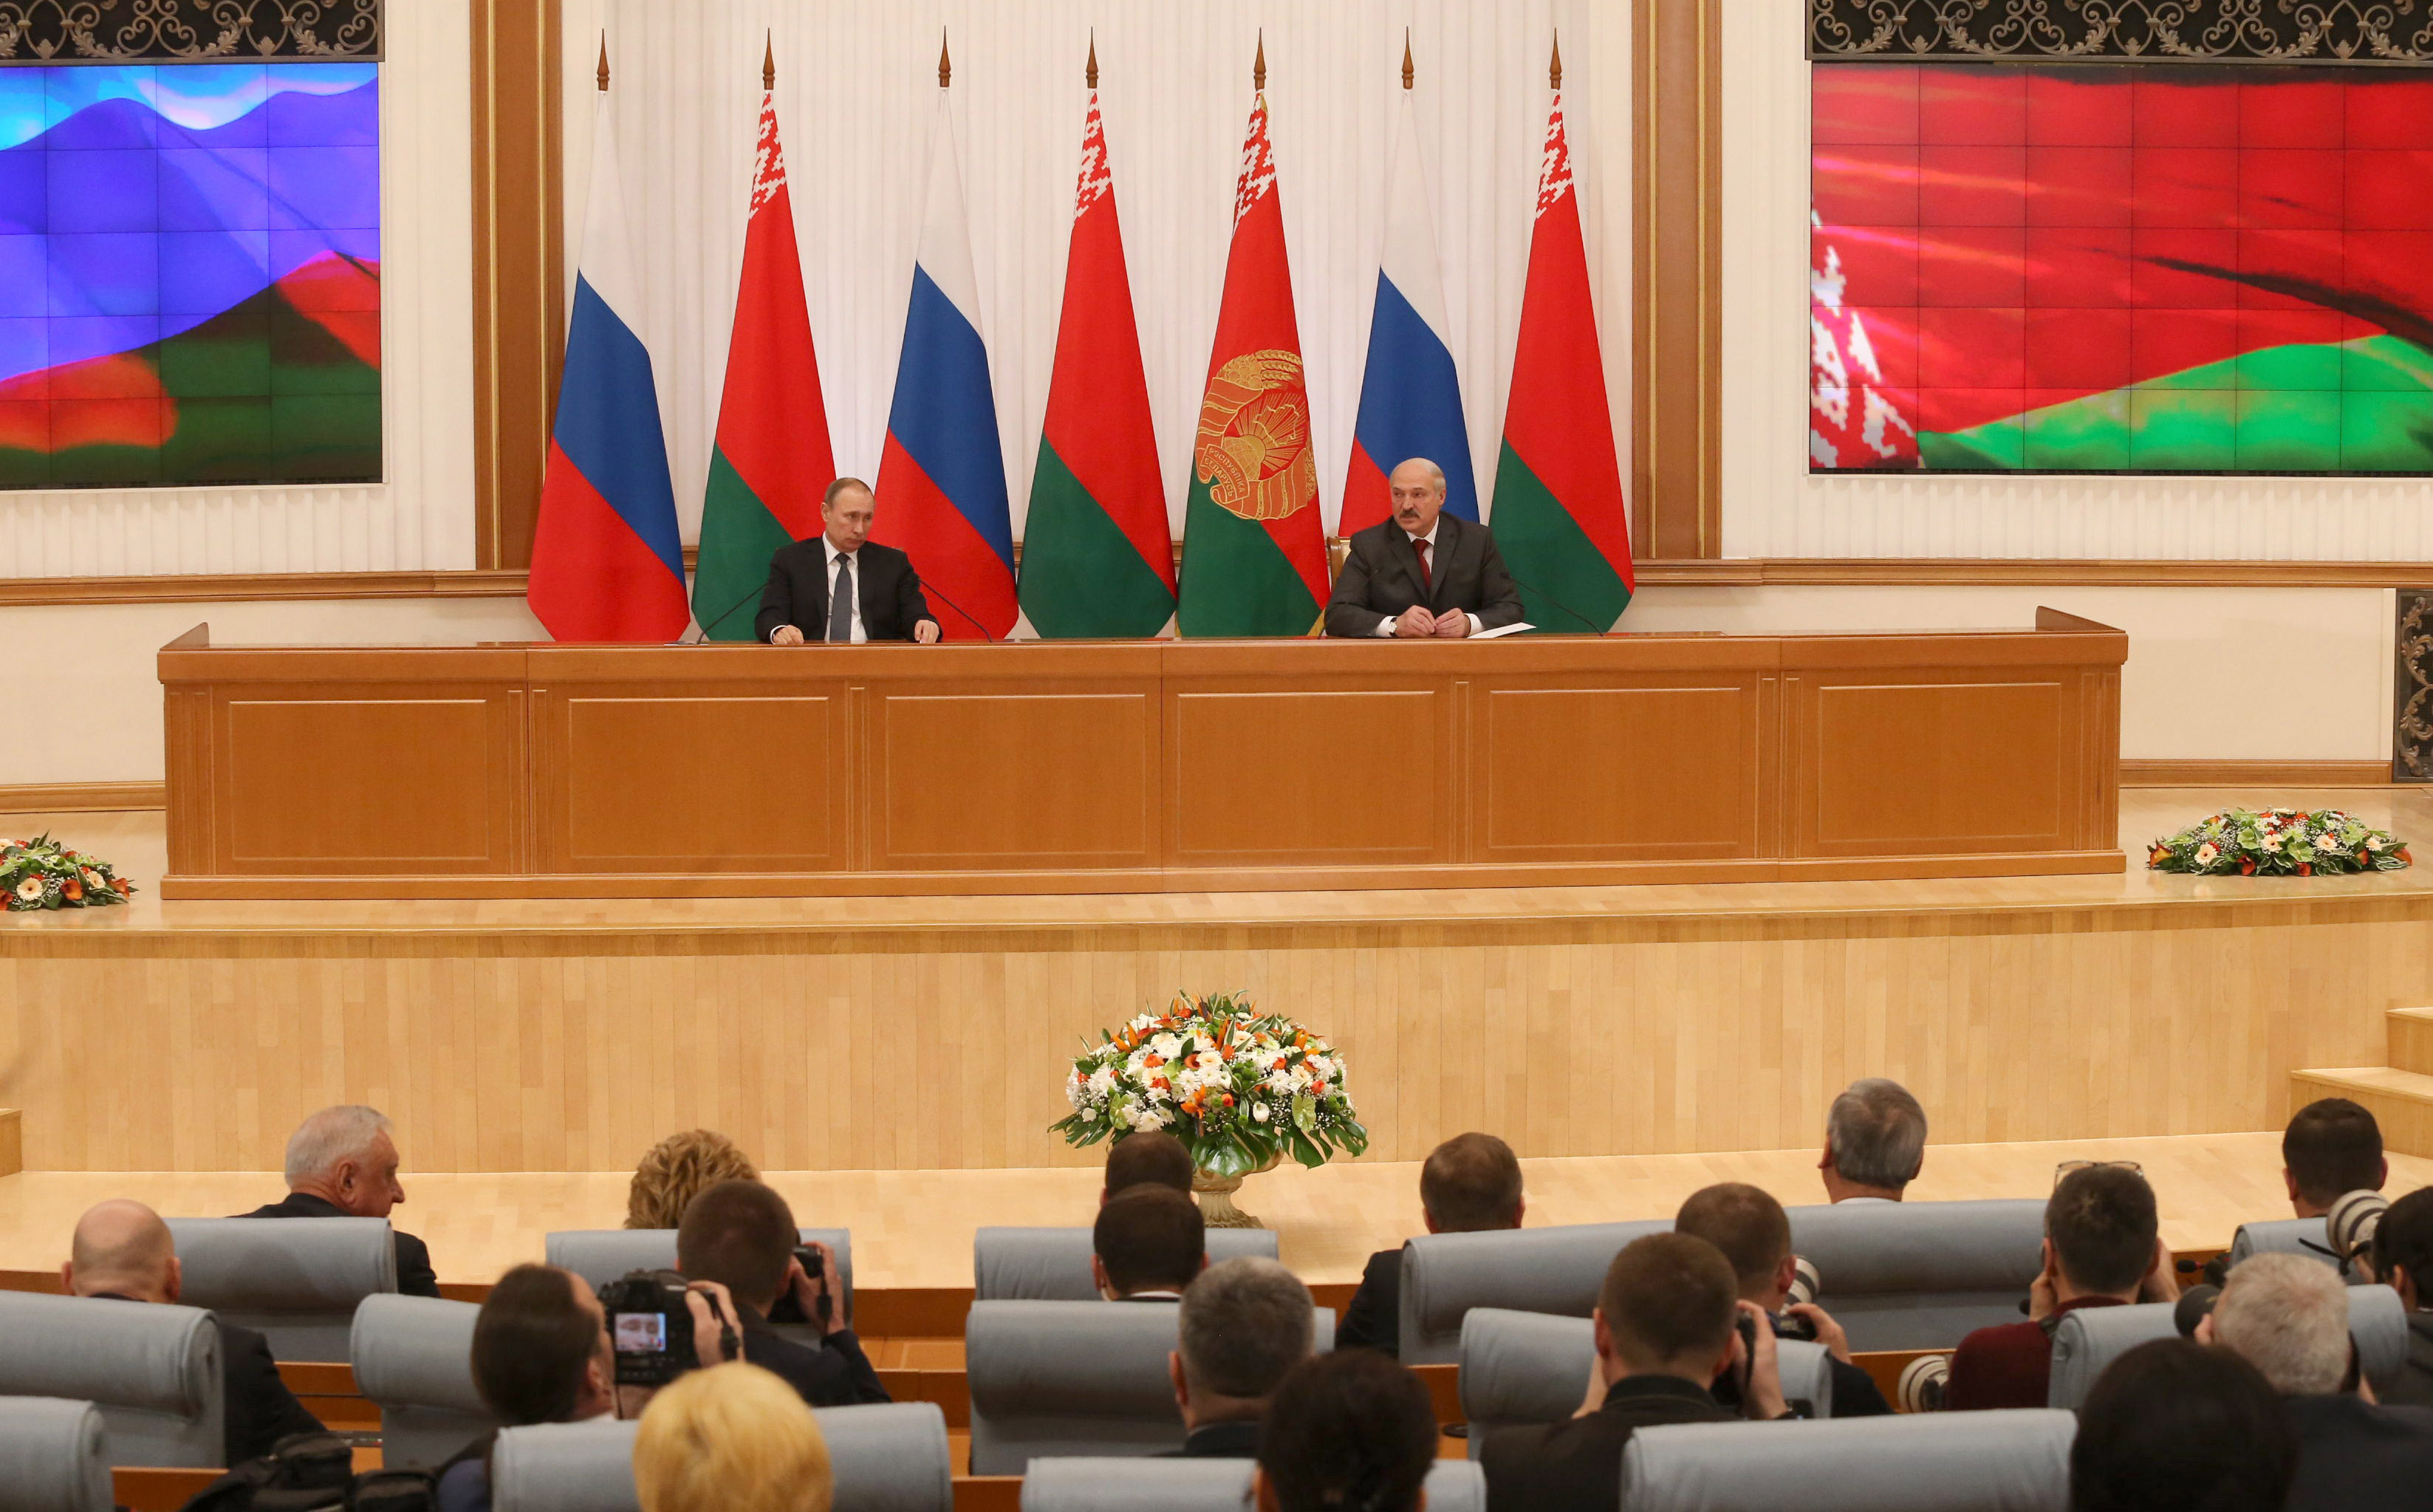  Заседание Высшего Государственного Совета Союзного государства пройдет 30 июня в Москве 